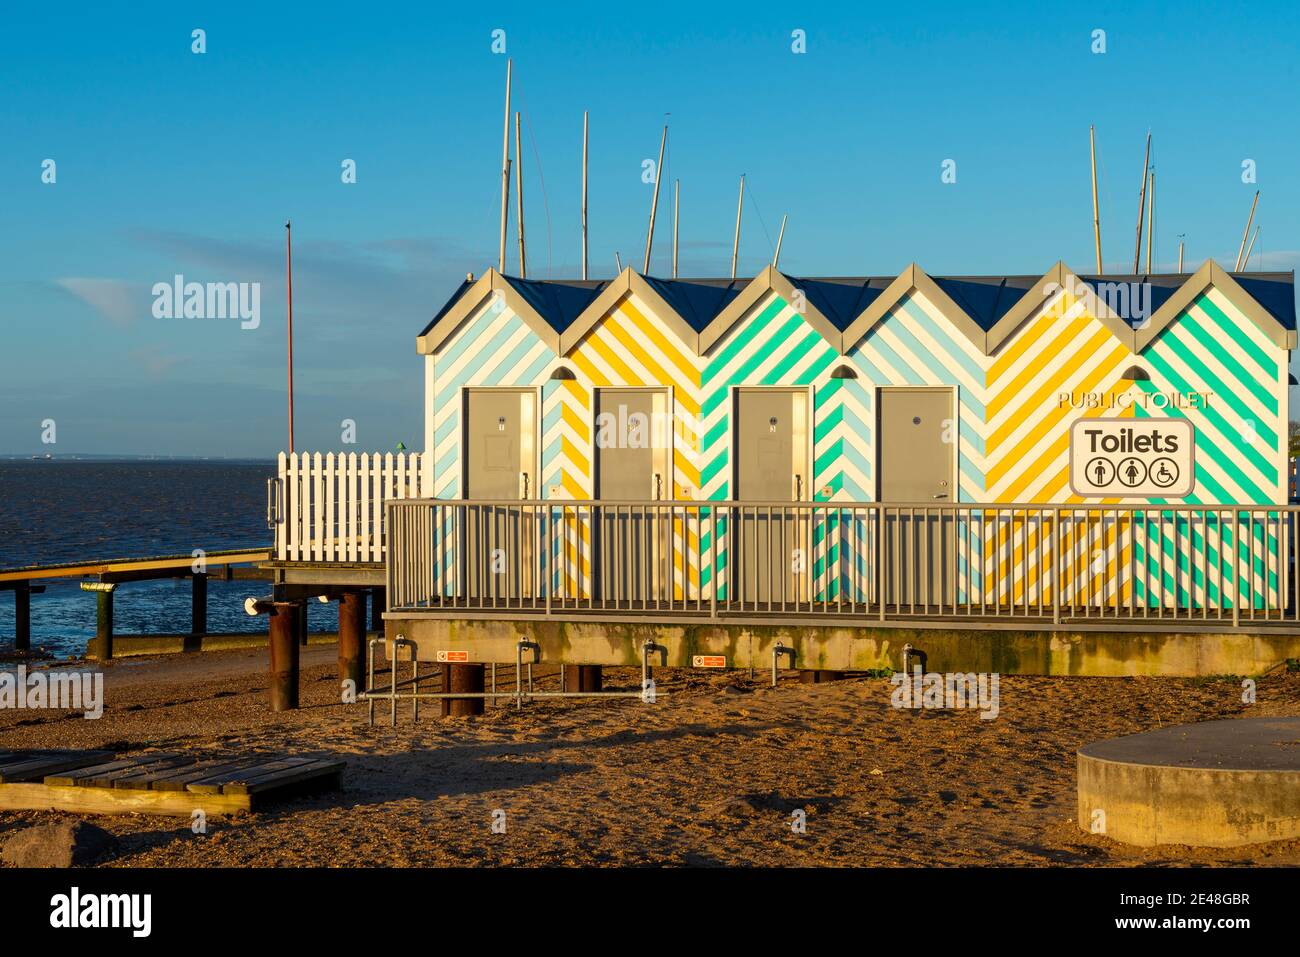 Toilettes multicolores sur Southend on Sea, Essex, au Royaume-Uni, bord de mer dans le style de cabines de plage en bois. Installations de l'Esplanade de l'Ouest. Commodités près de la plage Banque D'Images